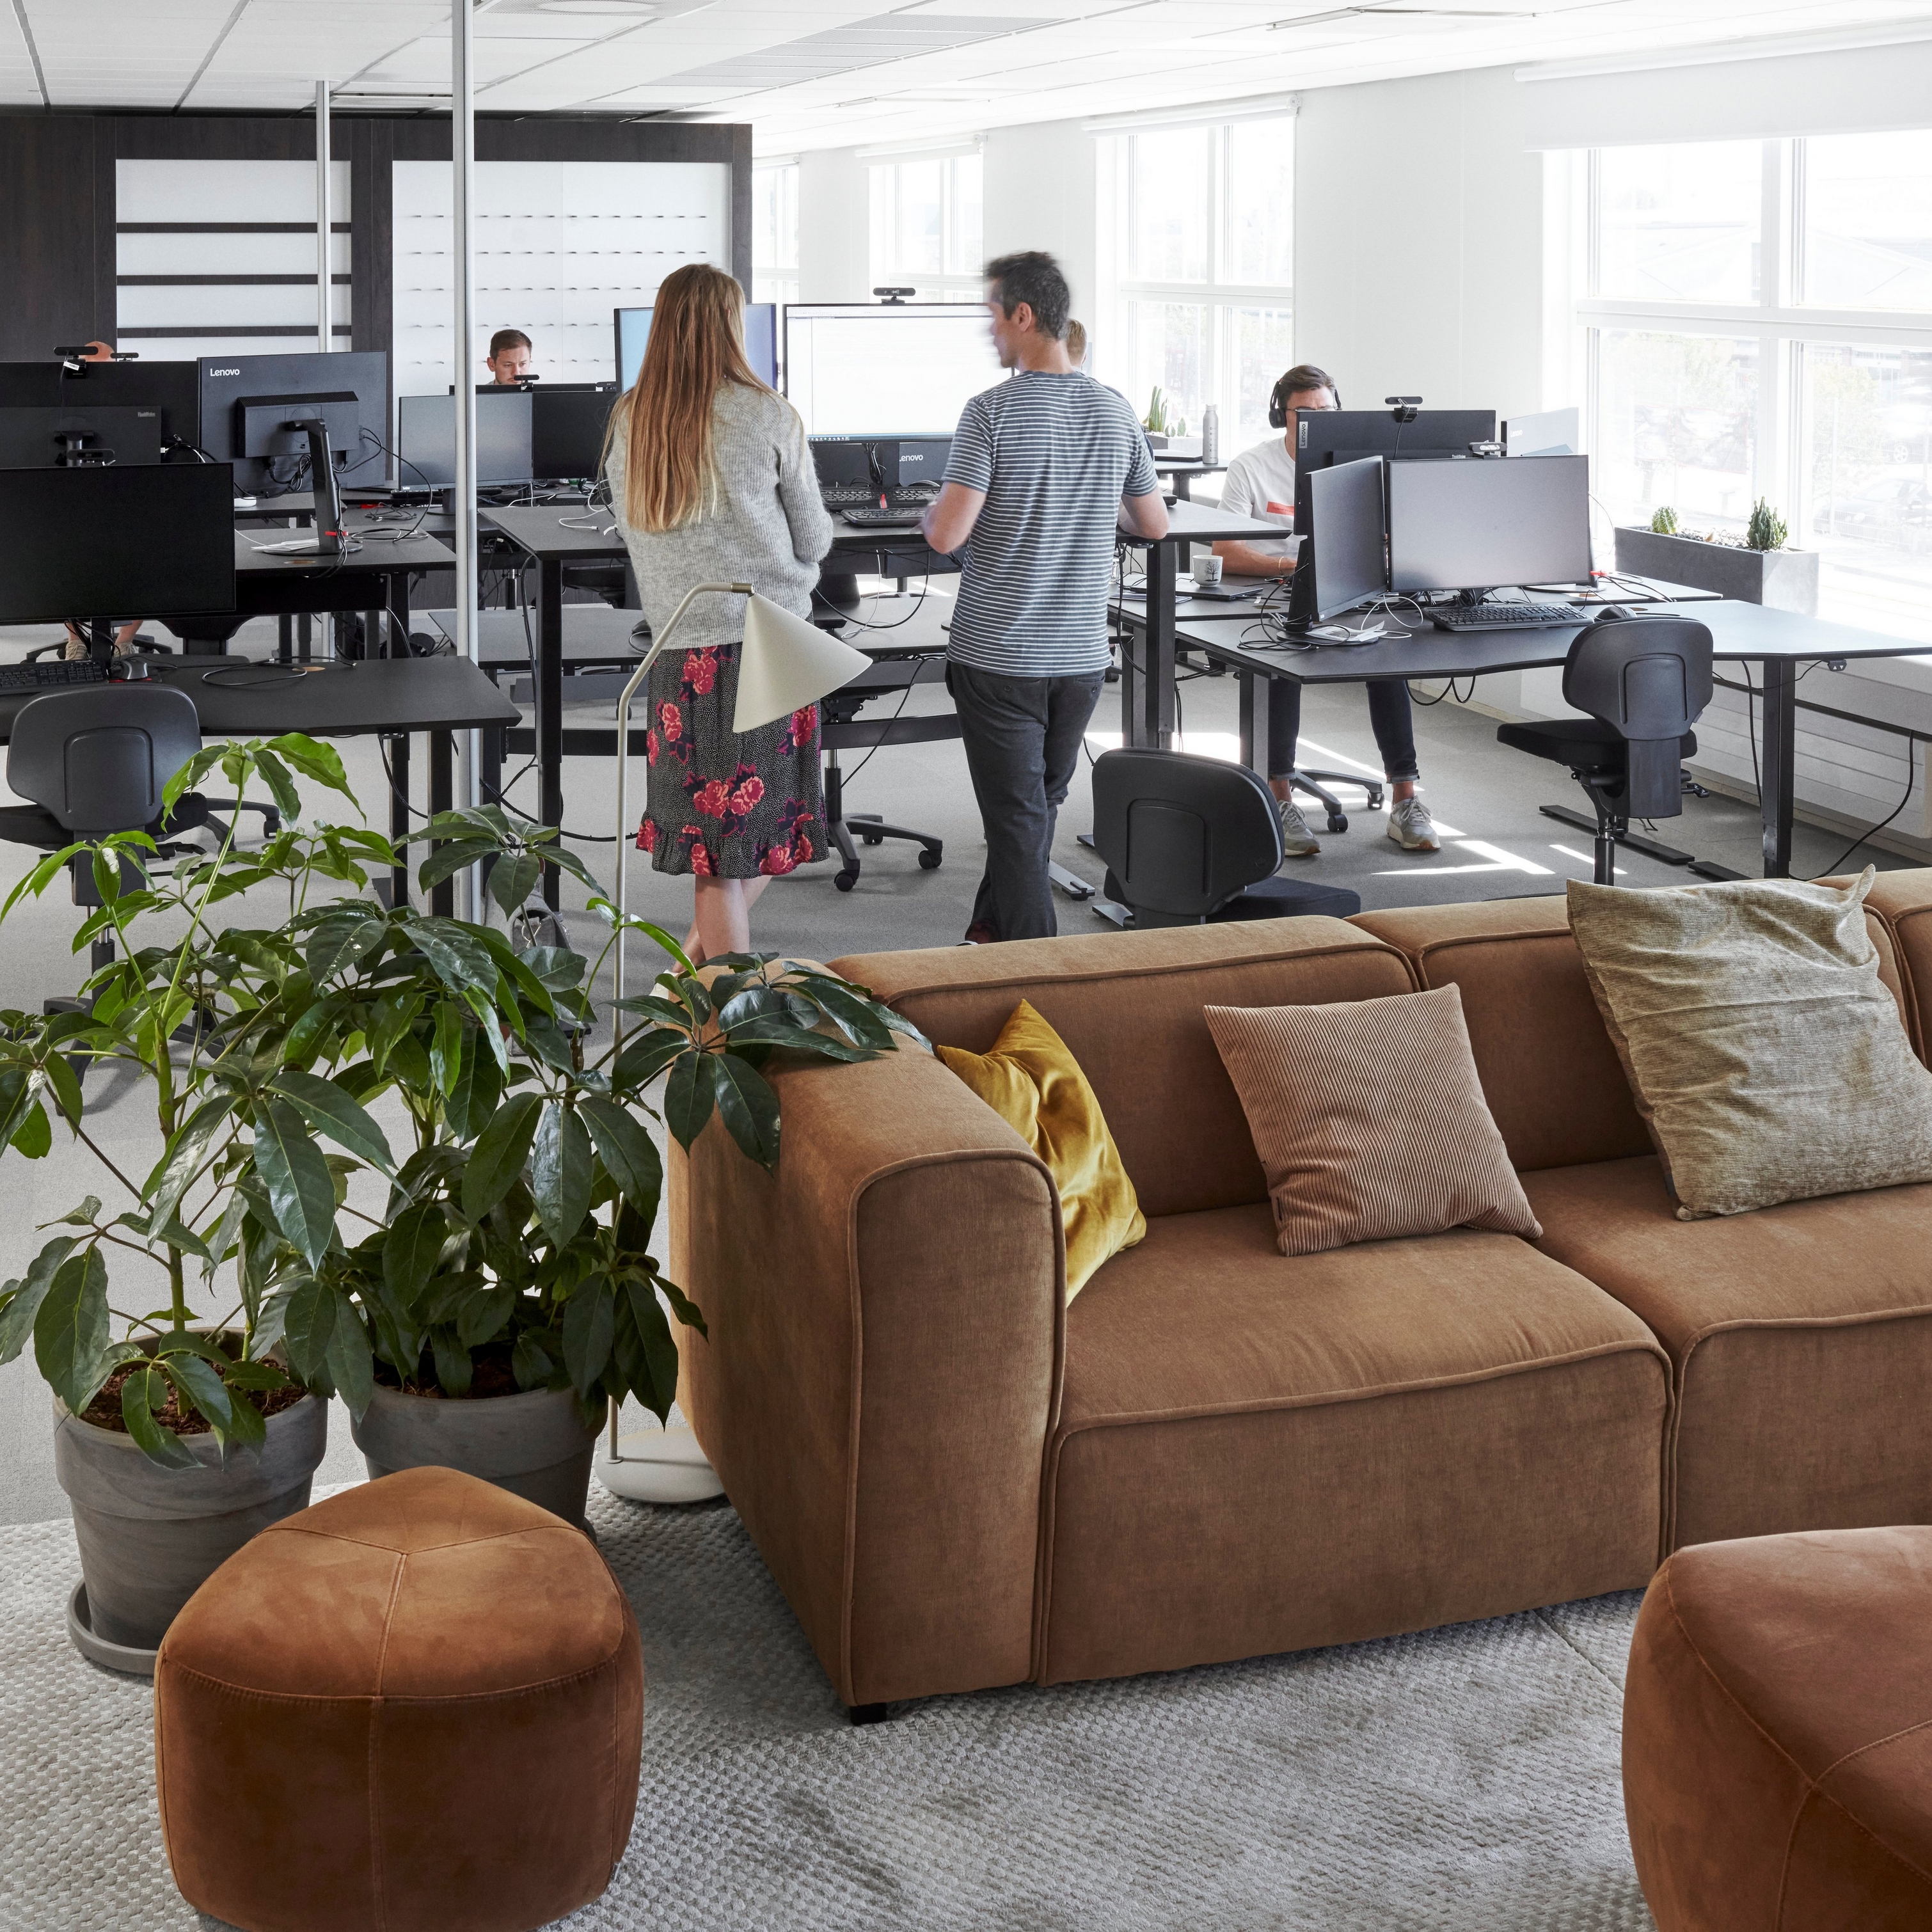 ボーコンセプト本社のモダンなオフィススペース。従業員がおり、コンピュータ、観葉植物、ブラウンのGrosso ソファが置かれている。